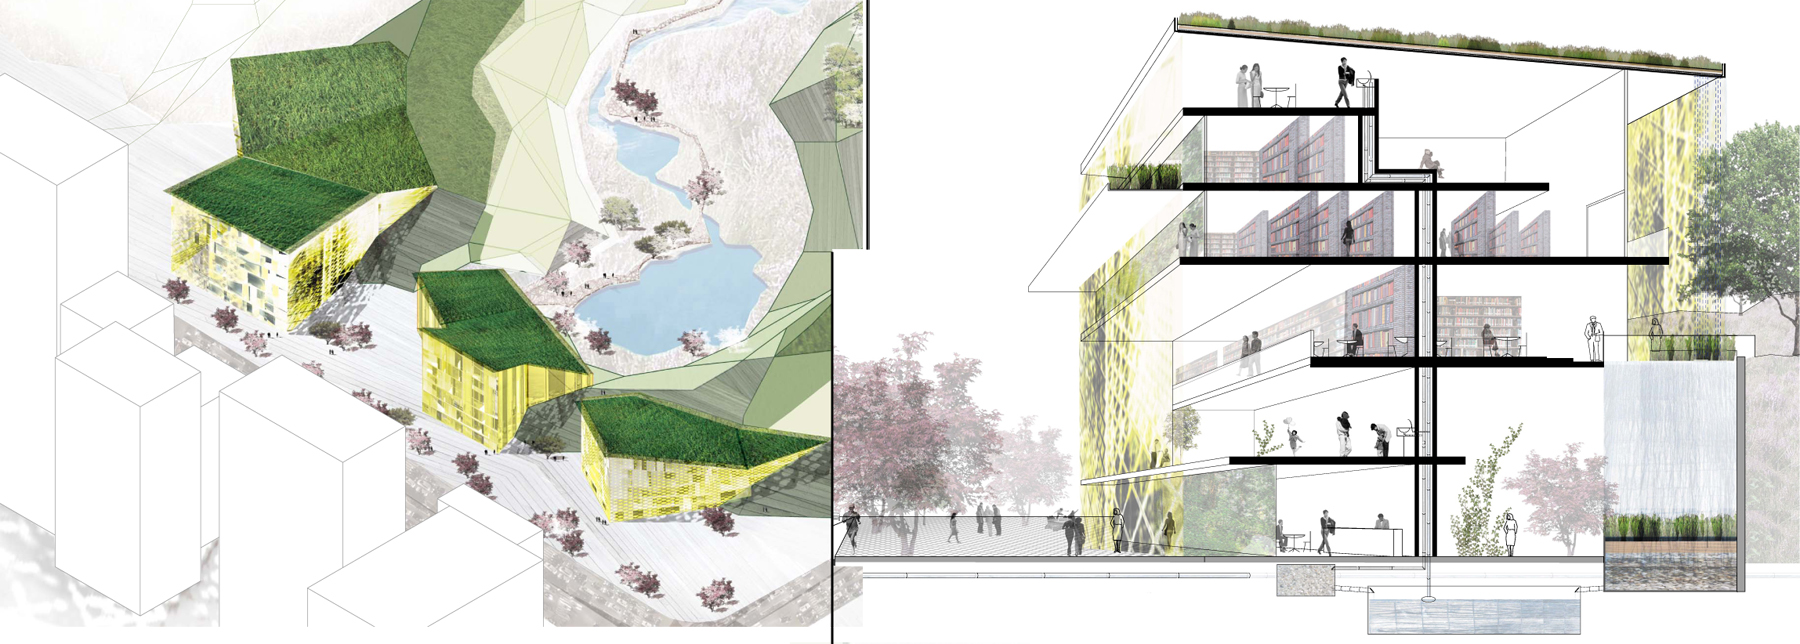 Landscape Architecture Urban Design